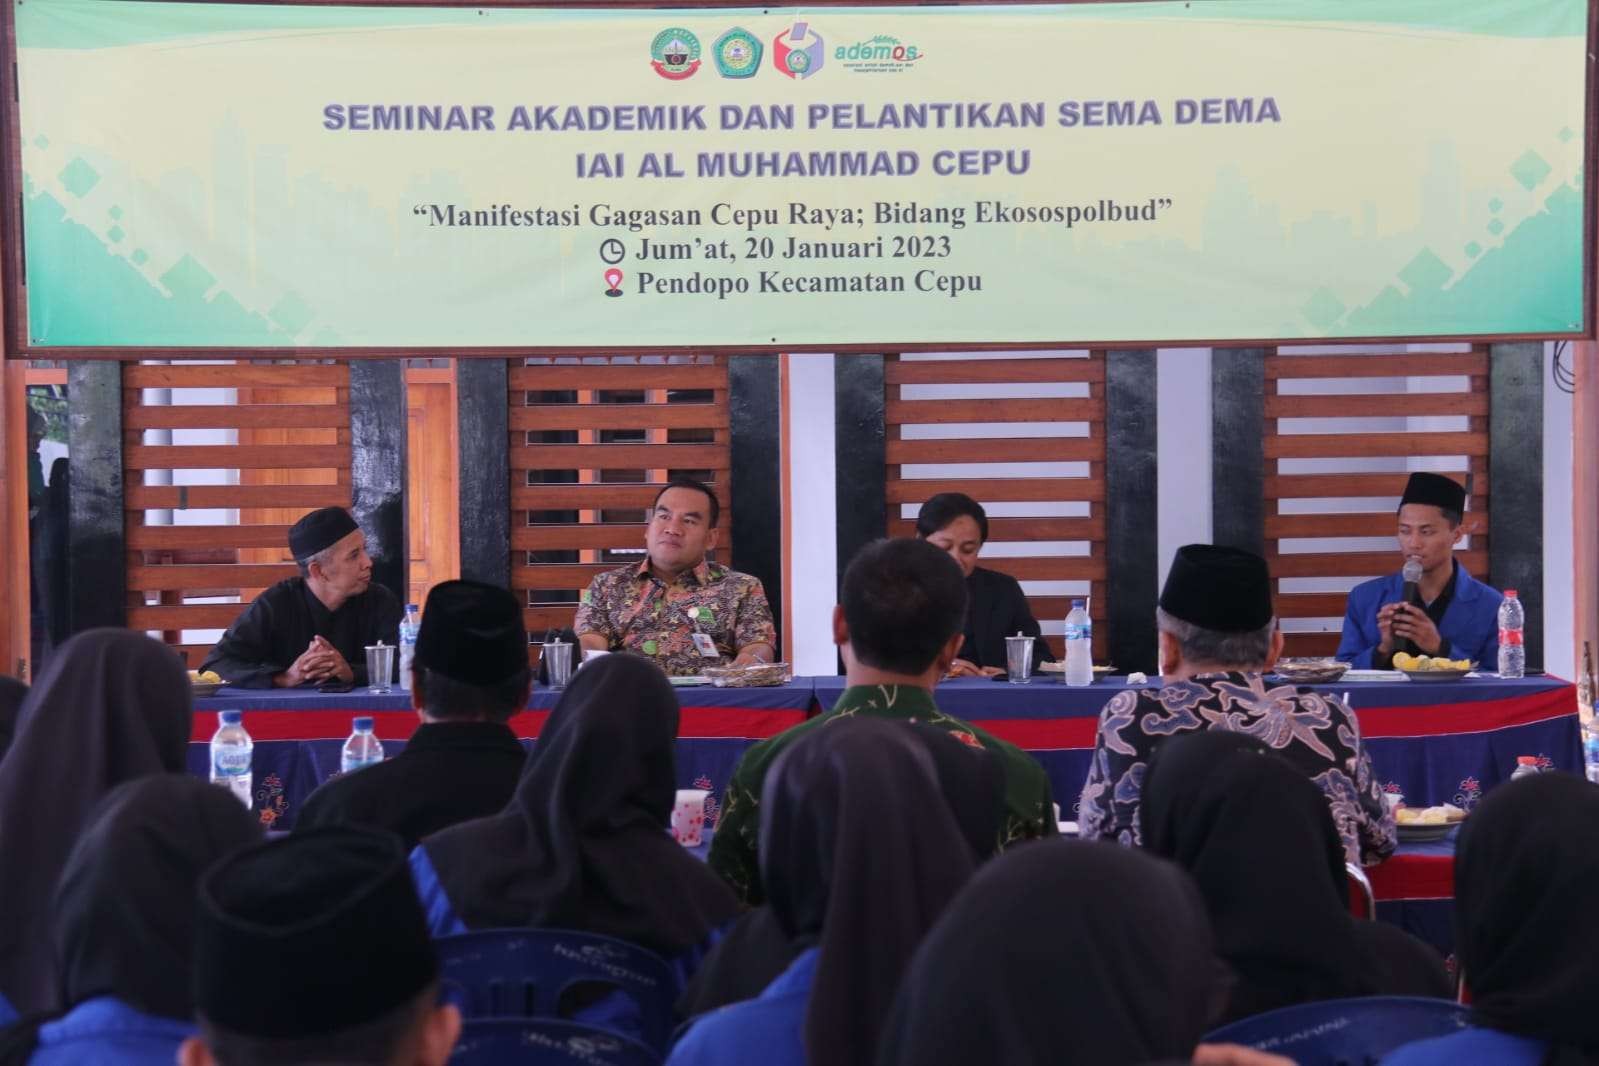 Seminar Akademik dirangkaikan pelantikan SEMA-DEMA IAI Al Muhammad Cepu, Jumat 20 Januari 2023. Dibahas juga soal kawasan Cepu Raya. (Foto: Humas Pemkab Blora)